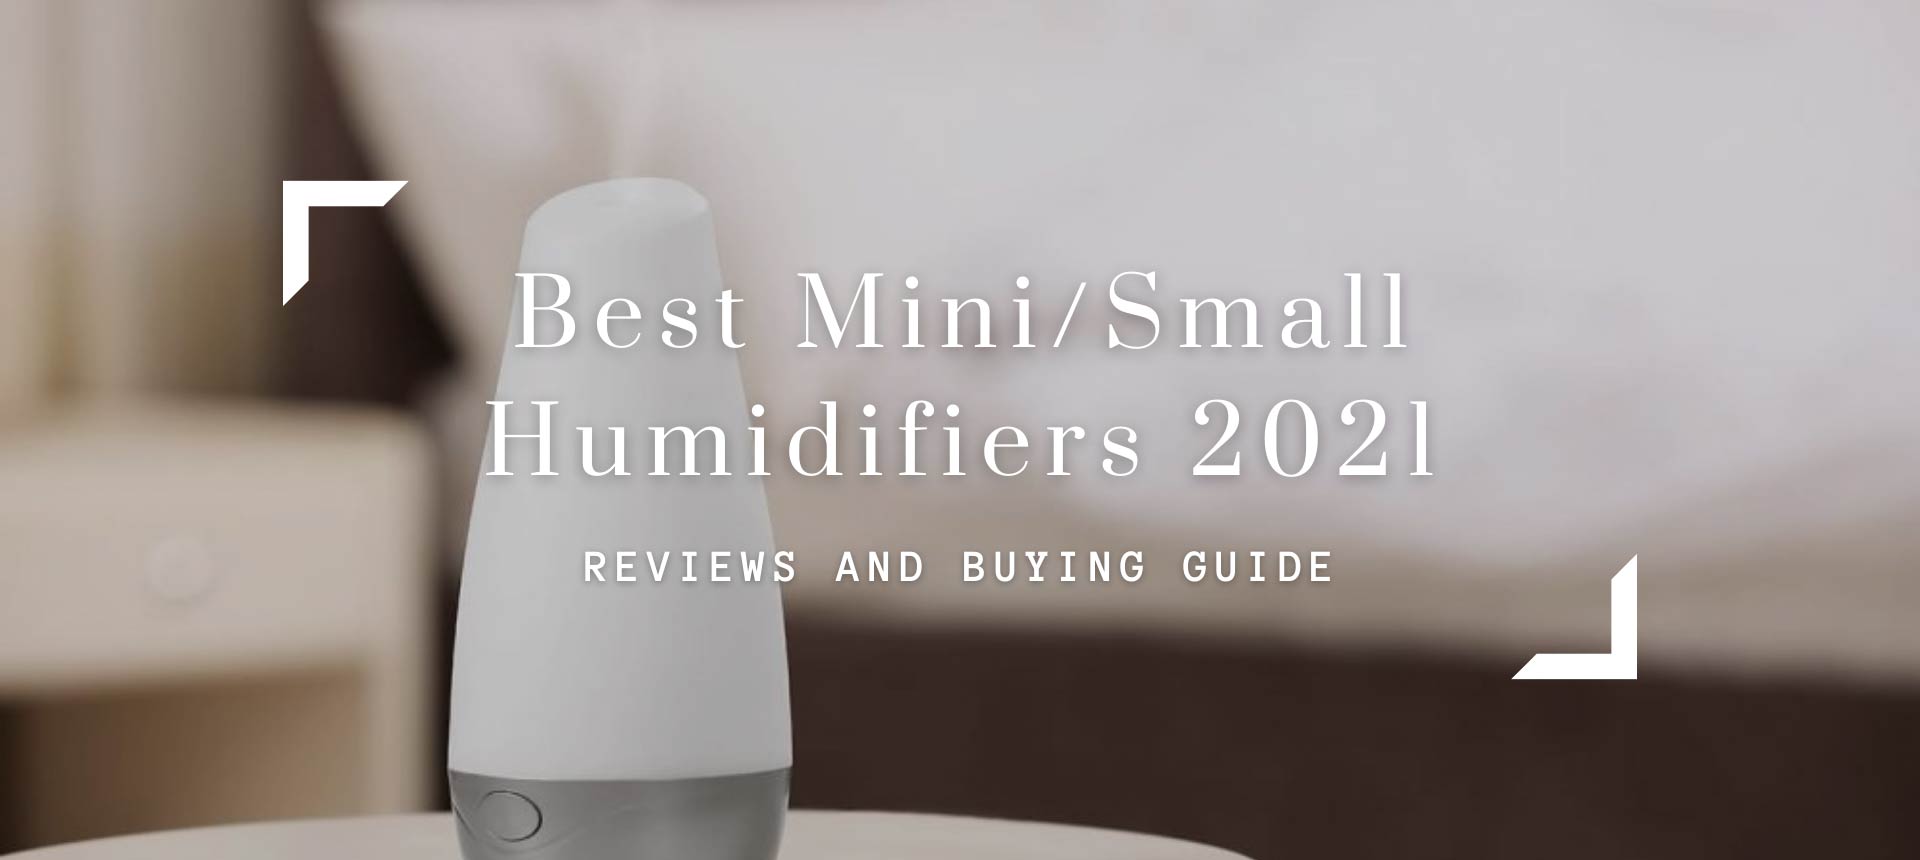 Best Mini/Small Humidifiers 2021